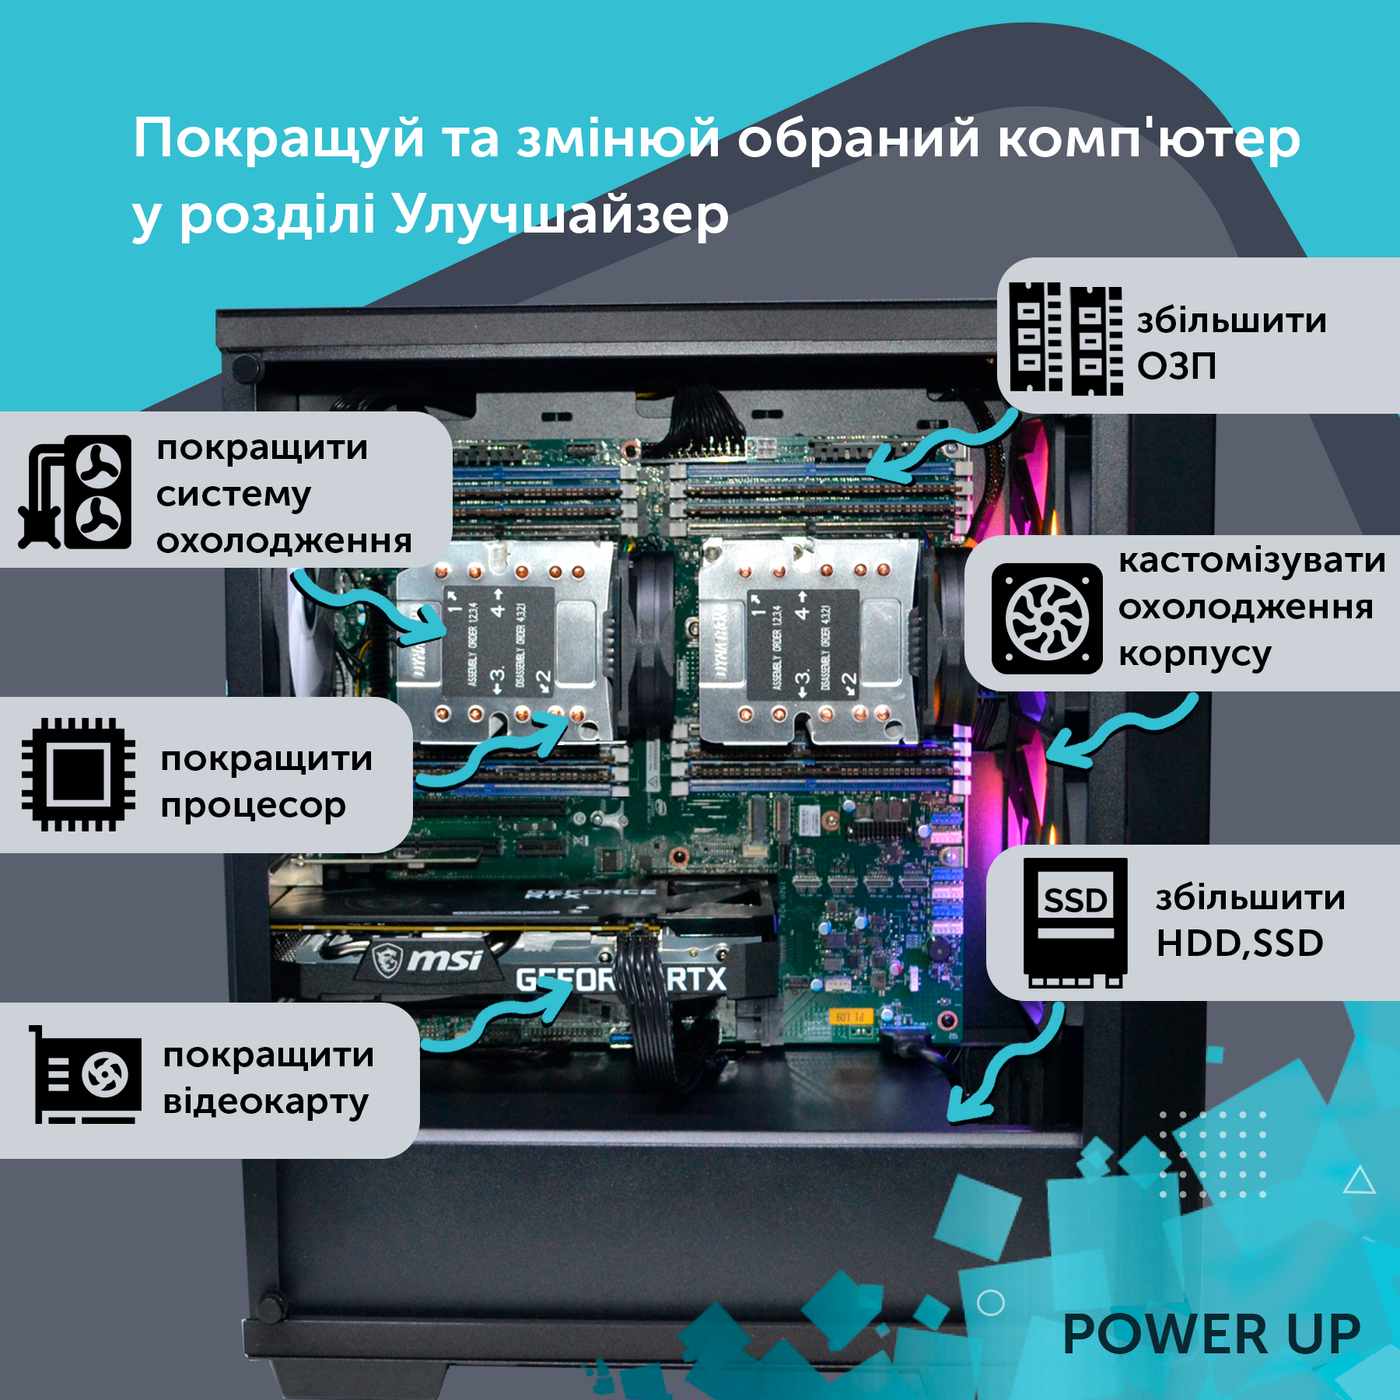 Двухпроцессорная рабочая станция PowerUp #424 Xeon E5 2690 v4 x2/64 GB/SSD 512GB/GeForce GTX 1660Ti 6GB